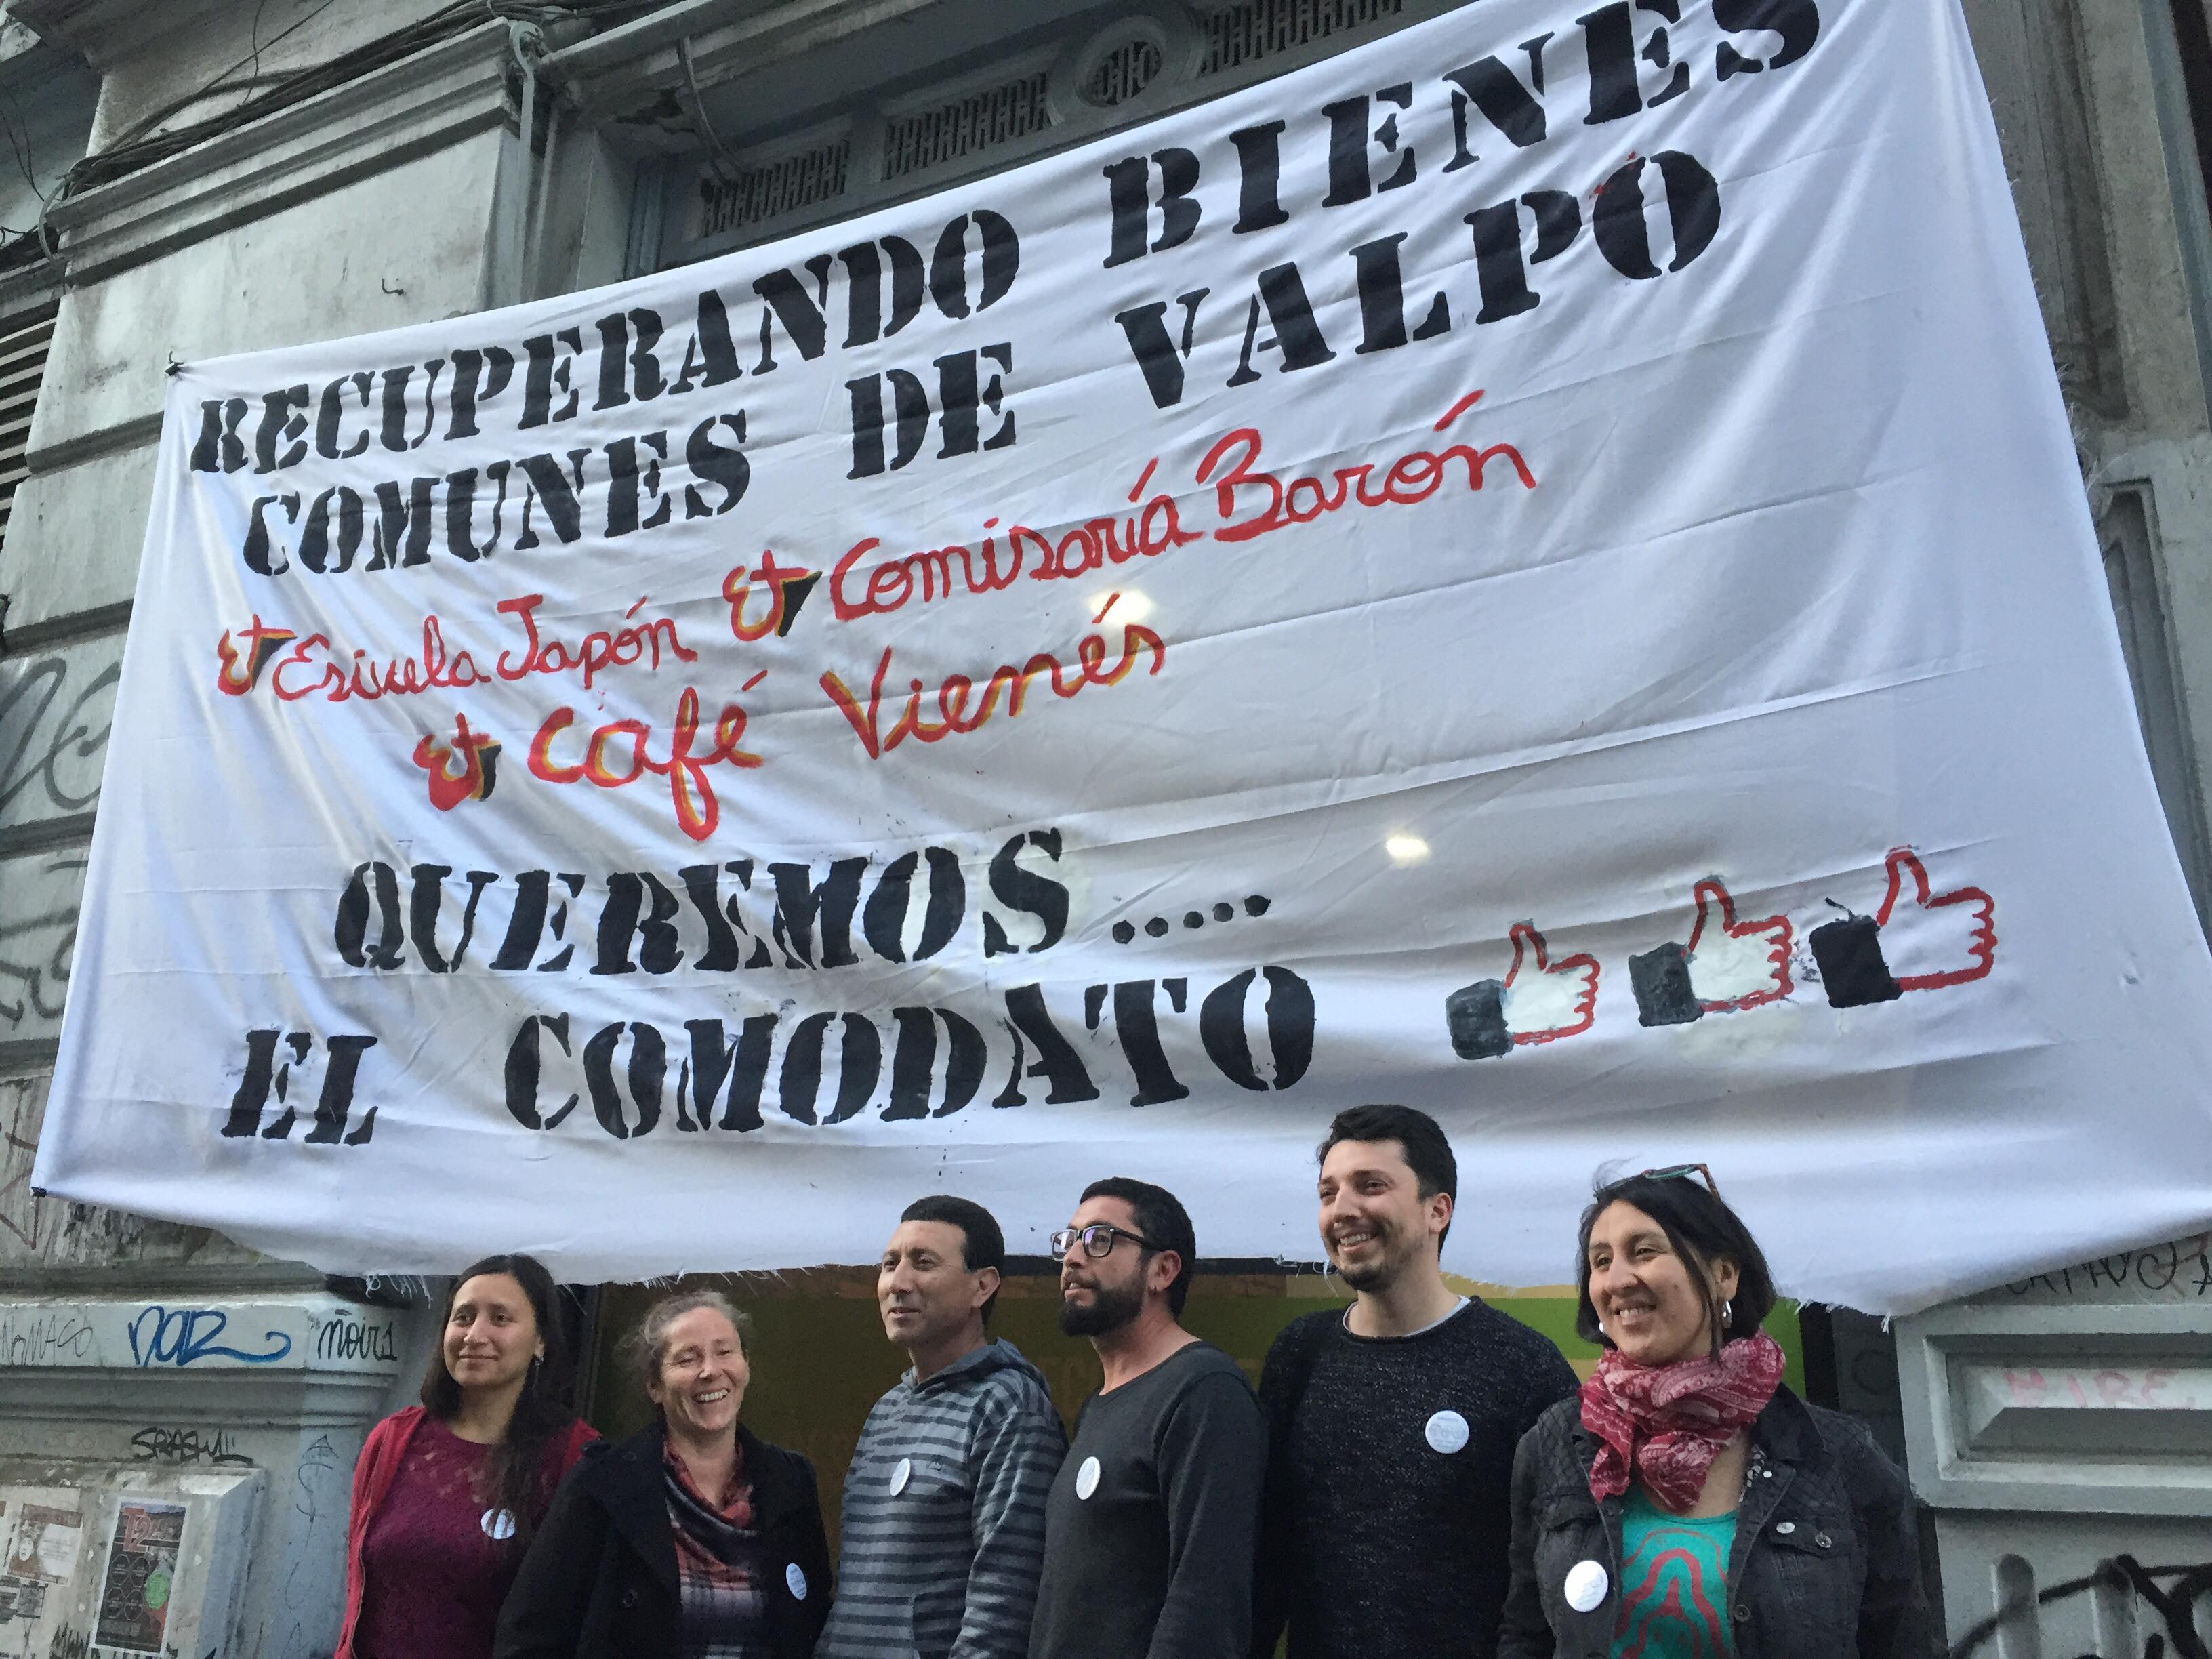 Con una invitación abierta a la comunidad nace “Movimiento recuperando bienes comunes Valparaíso”